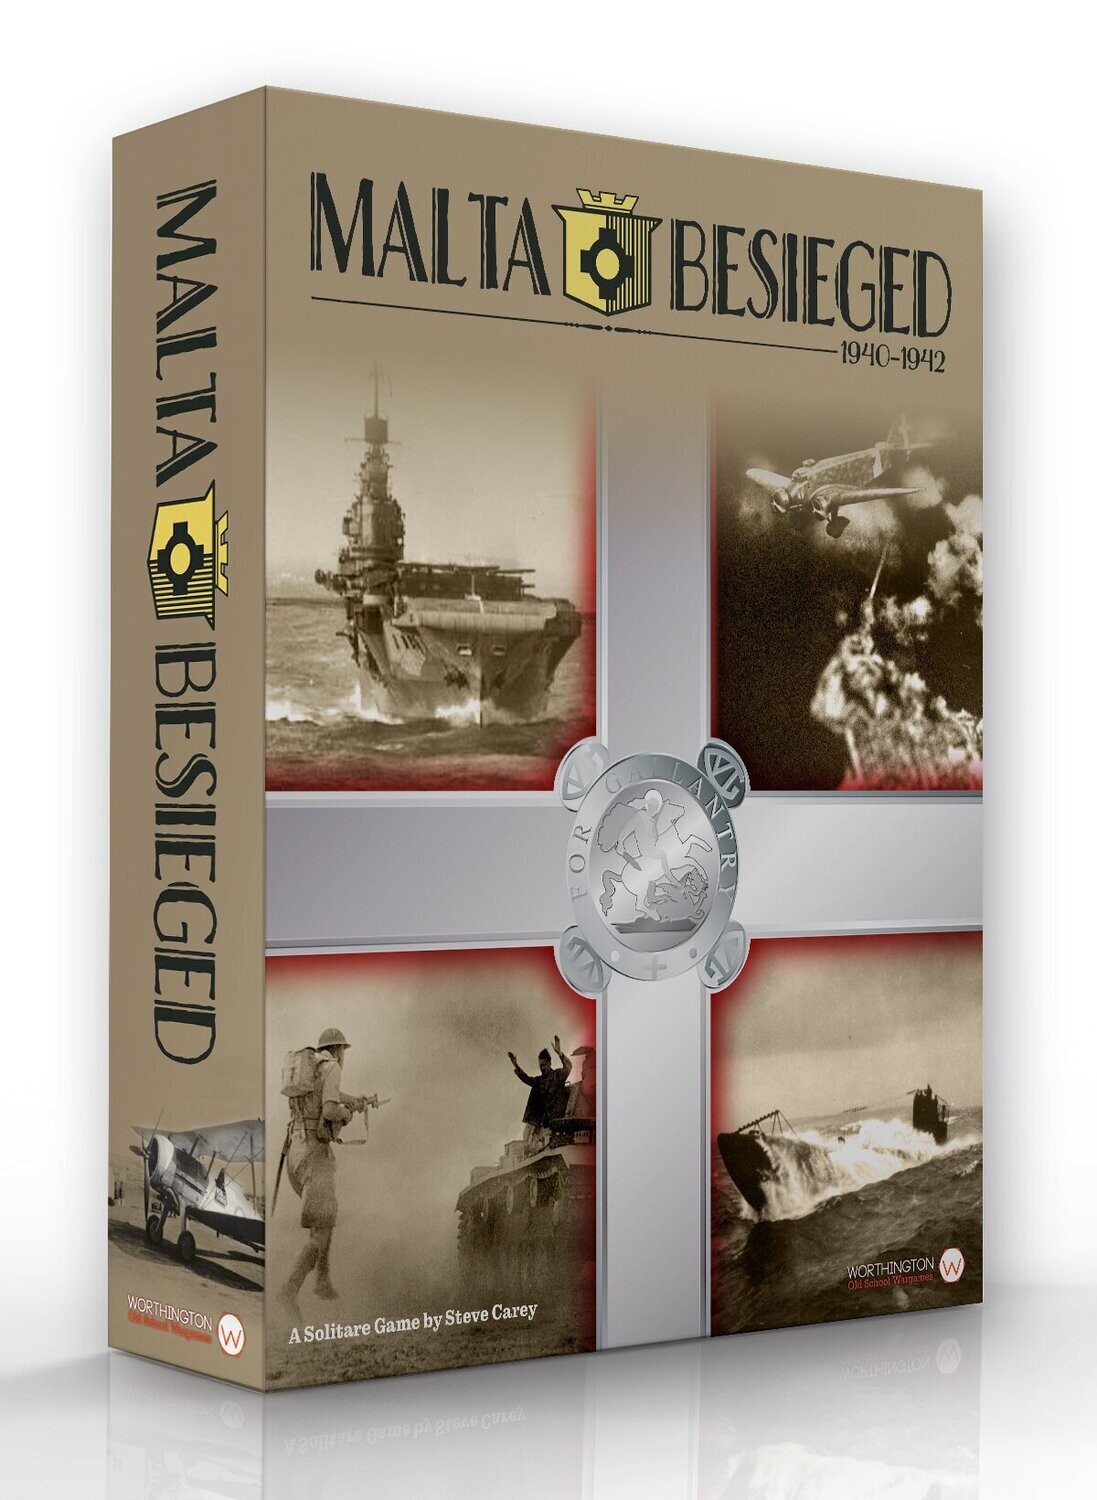 Malta Besieged: 1940-1942 (Solitaire)